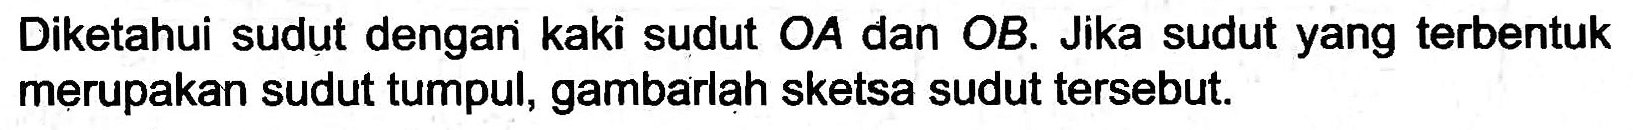 Diketahui sudut dengani kaki sudut  O A  dan OB. Jika sudut yang terbentuk merupakan sudut tumpul, gambarlah sketsa sudut tersebut.